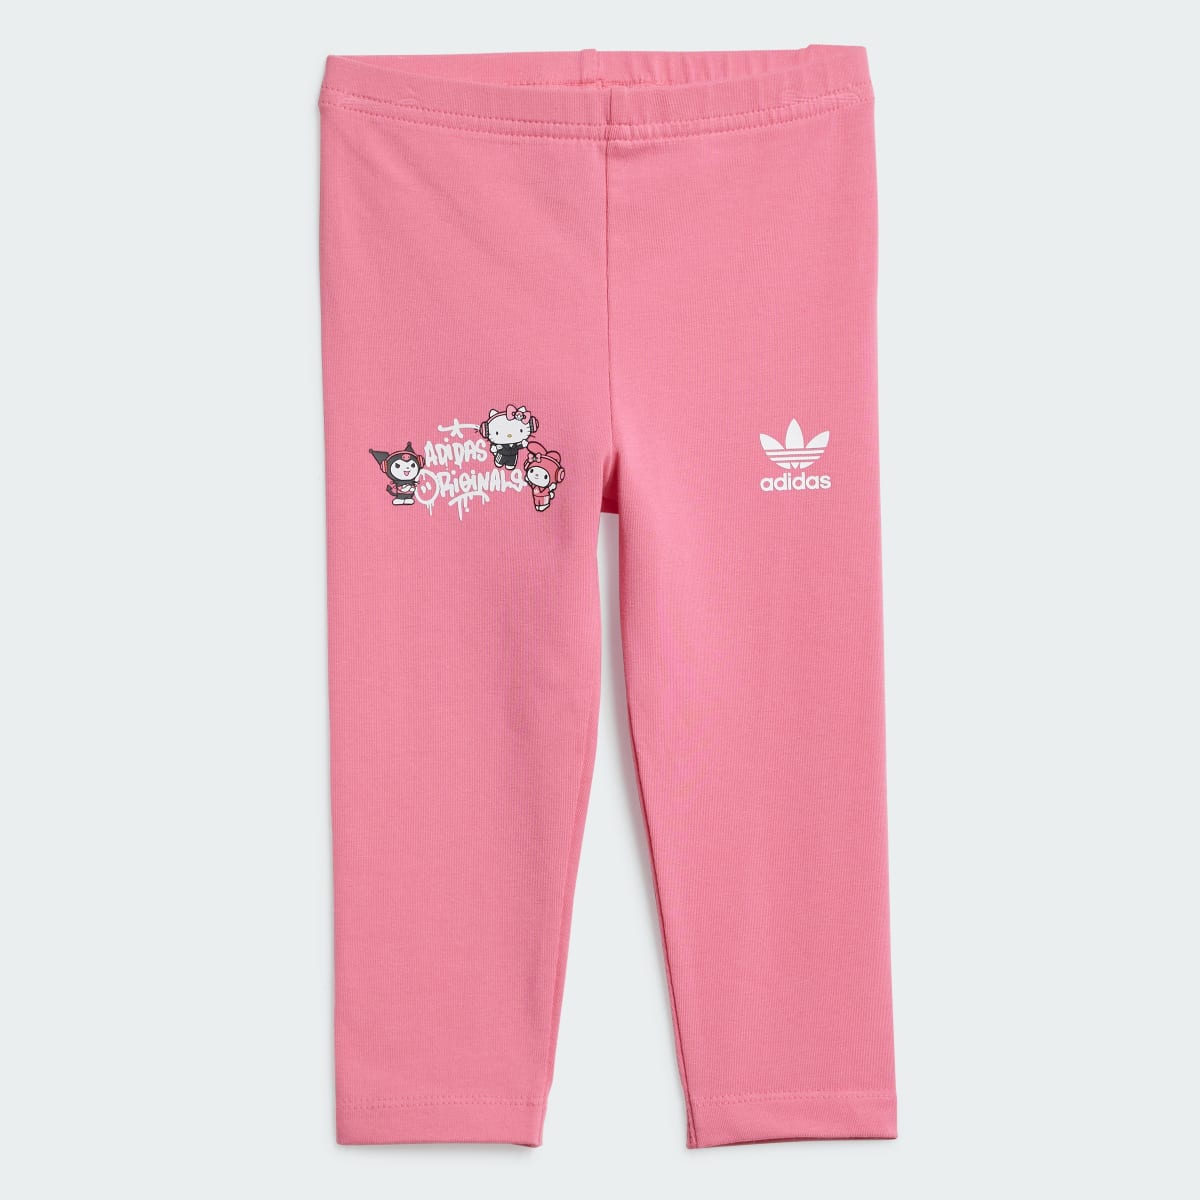 Adidas Conjunto de Vestido Playera y Mallas adidas Originals x Hello Kitty. 5